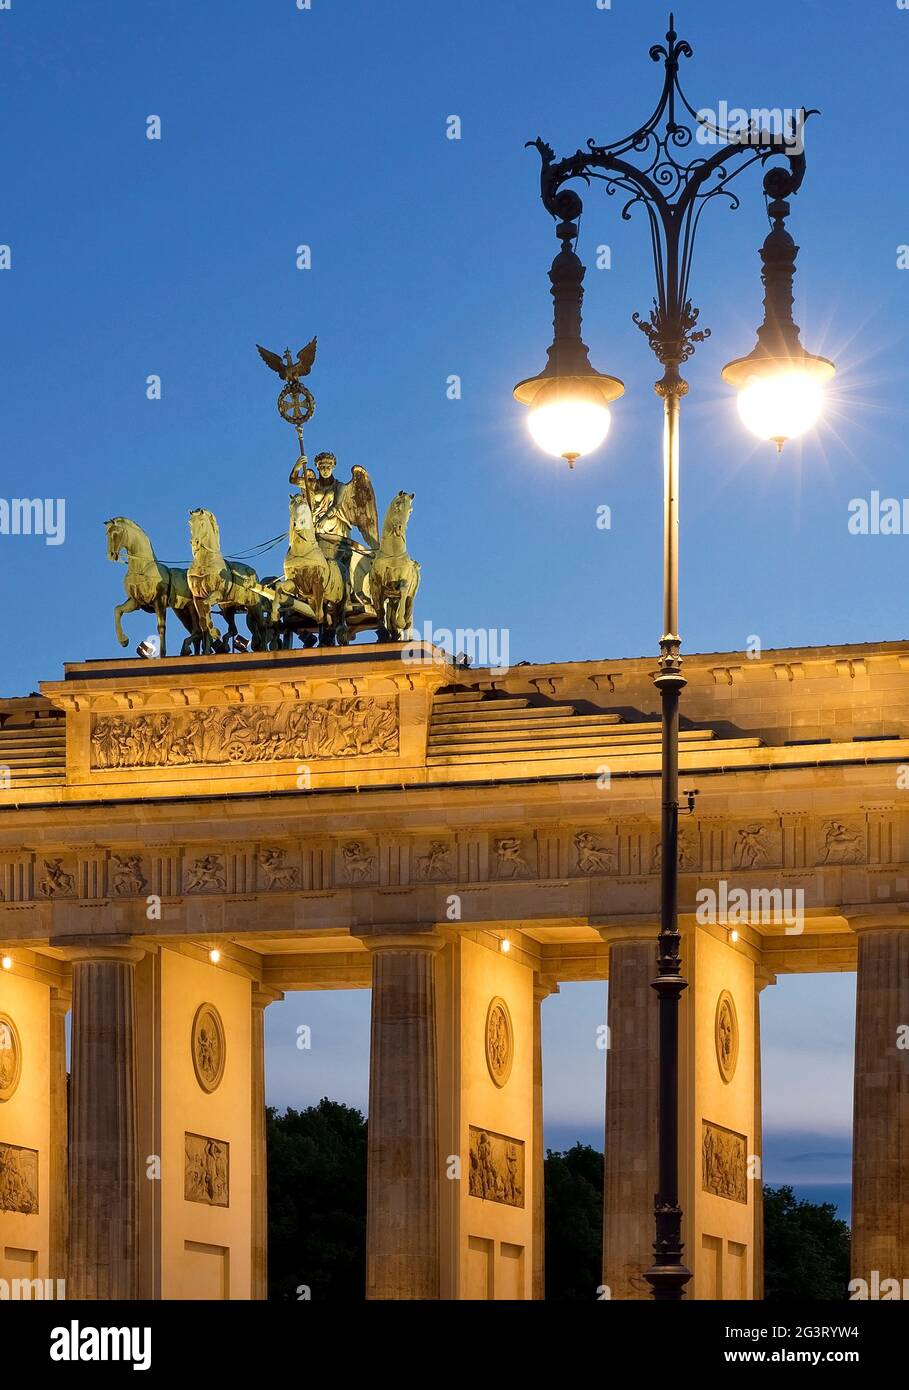 Quadriga sulla Brandenburger Tor con storica lanterna a gas sulla Pariser Platz (Piazza di Parigi) in serata, Germania, Berlino Foto Stock